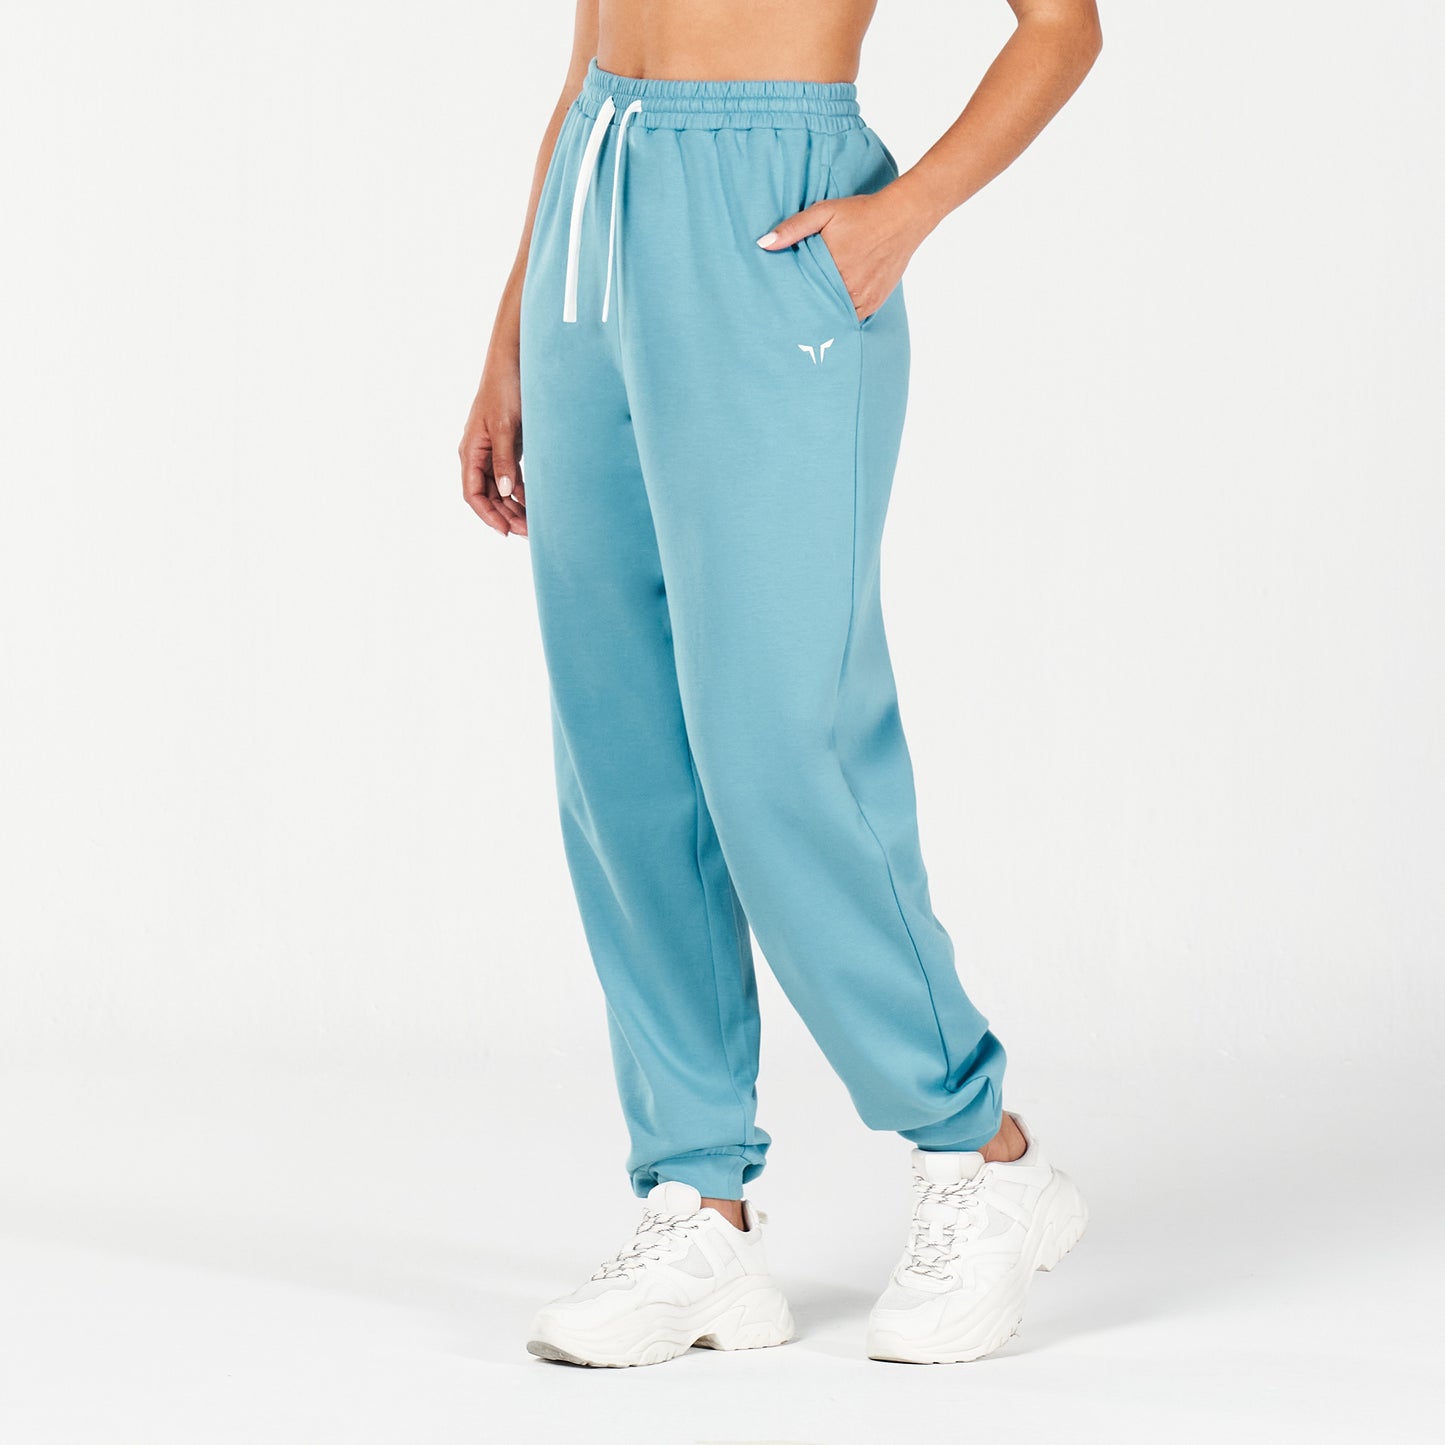 squatwolf-workout-clothes-core-oversized-sweatpants-delph-blue-gym-pants-for-women